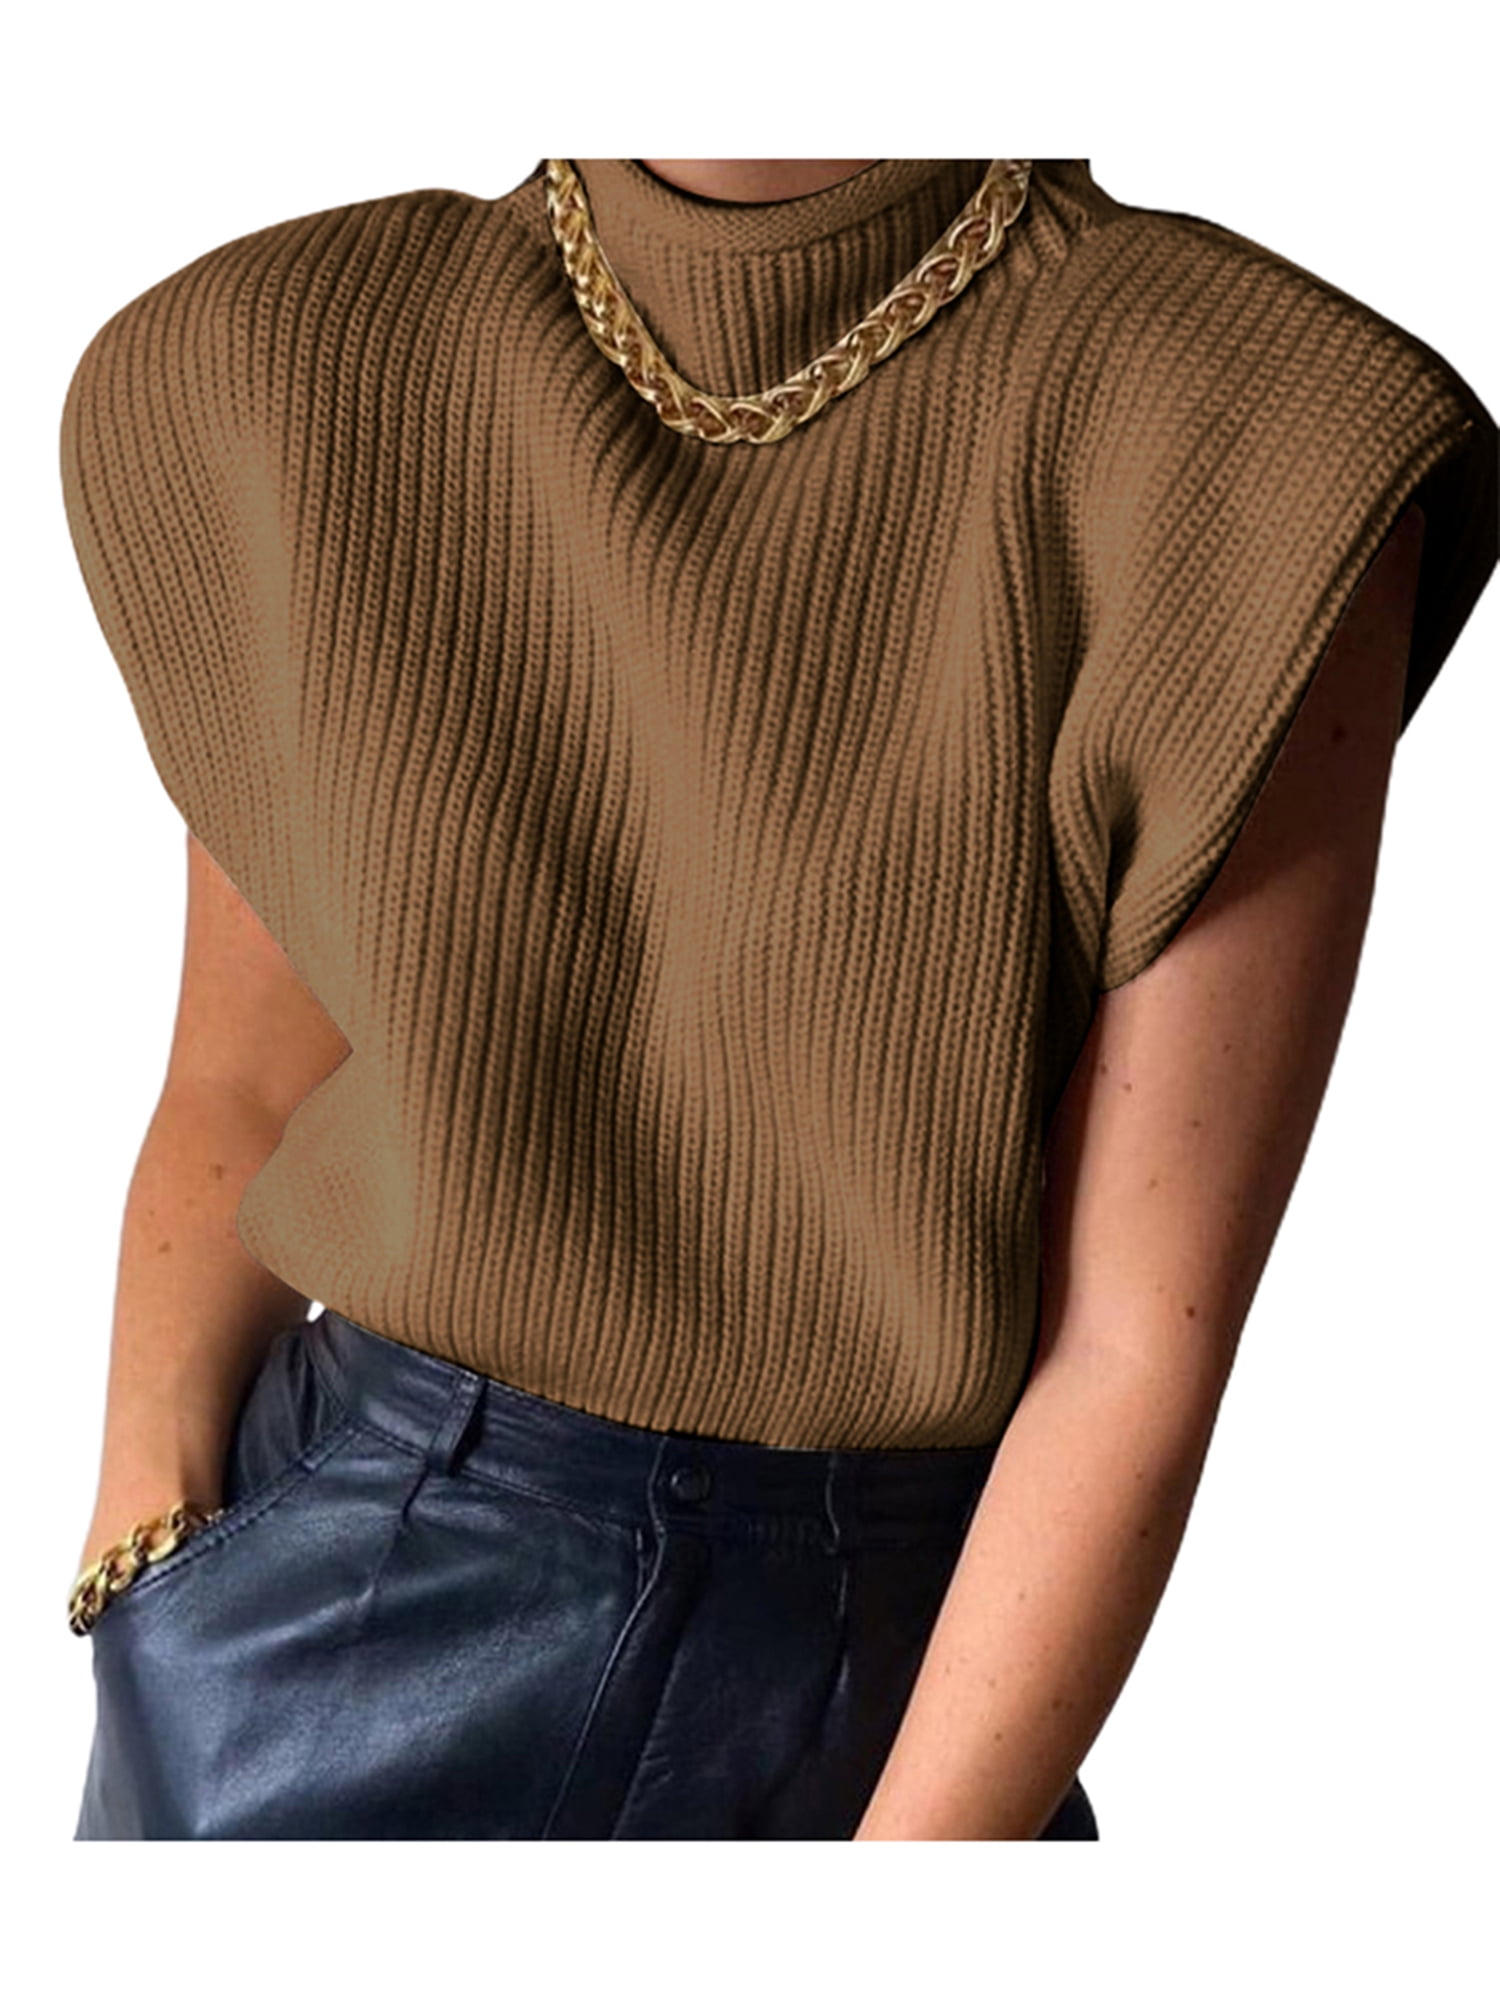 Shoulder pads leather vest, Brown vest for Womens - M289COC - Cuadra Shop